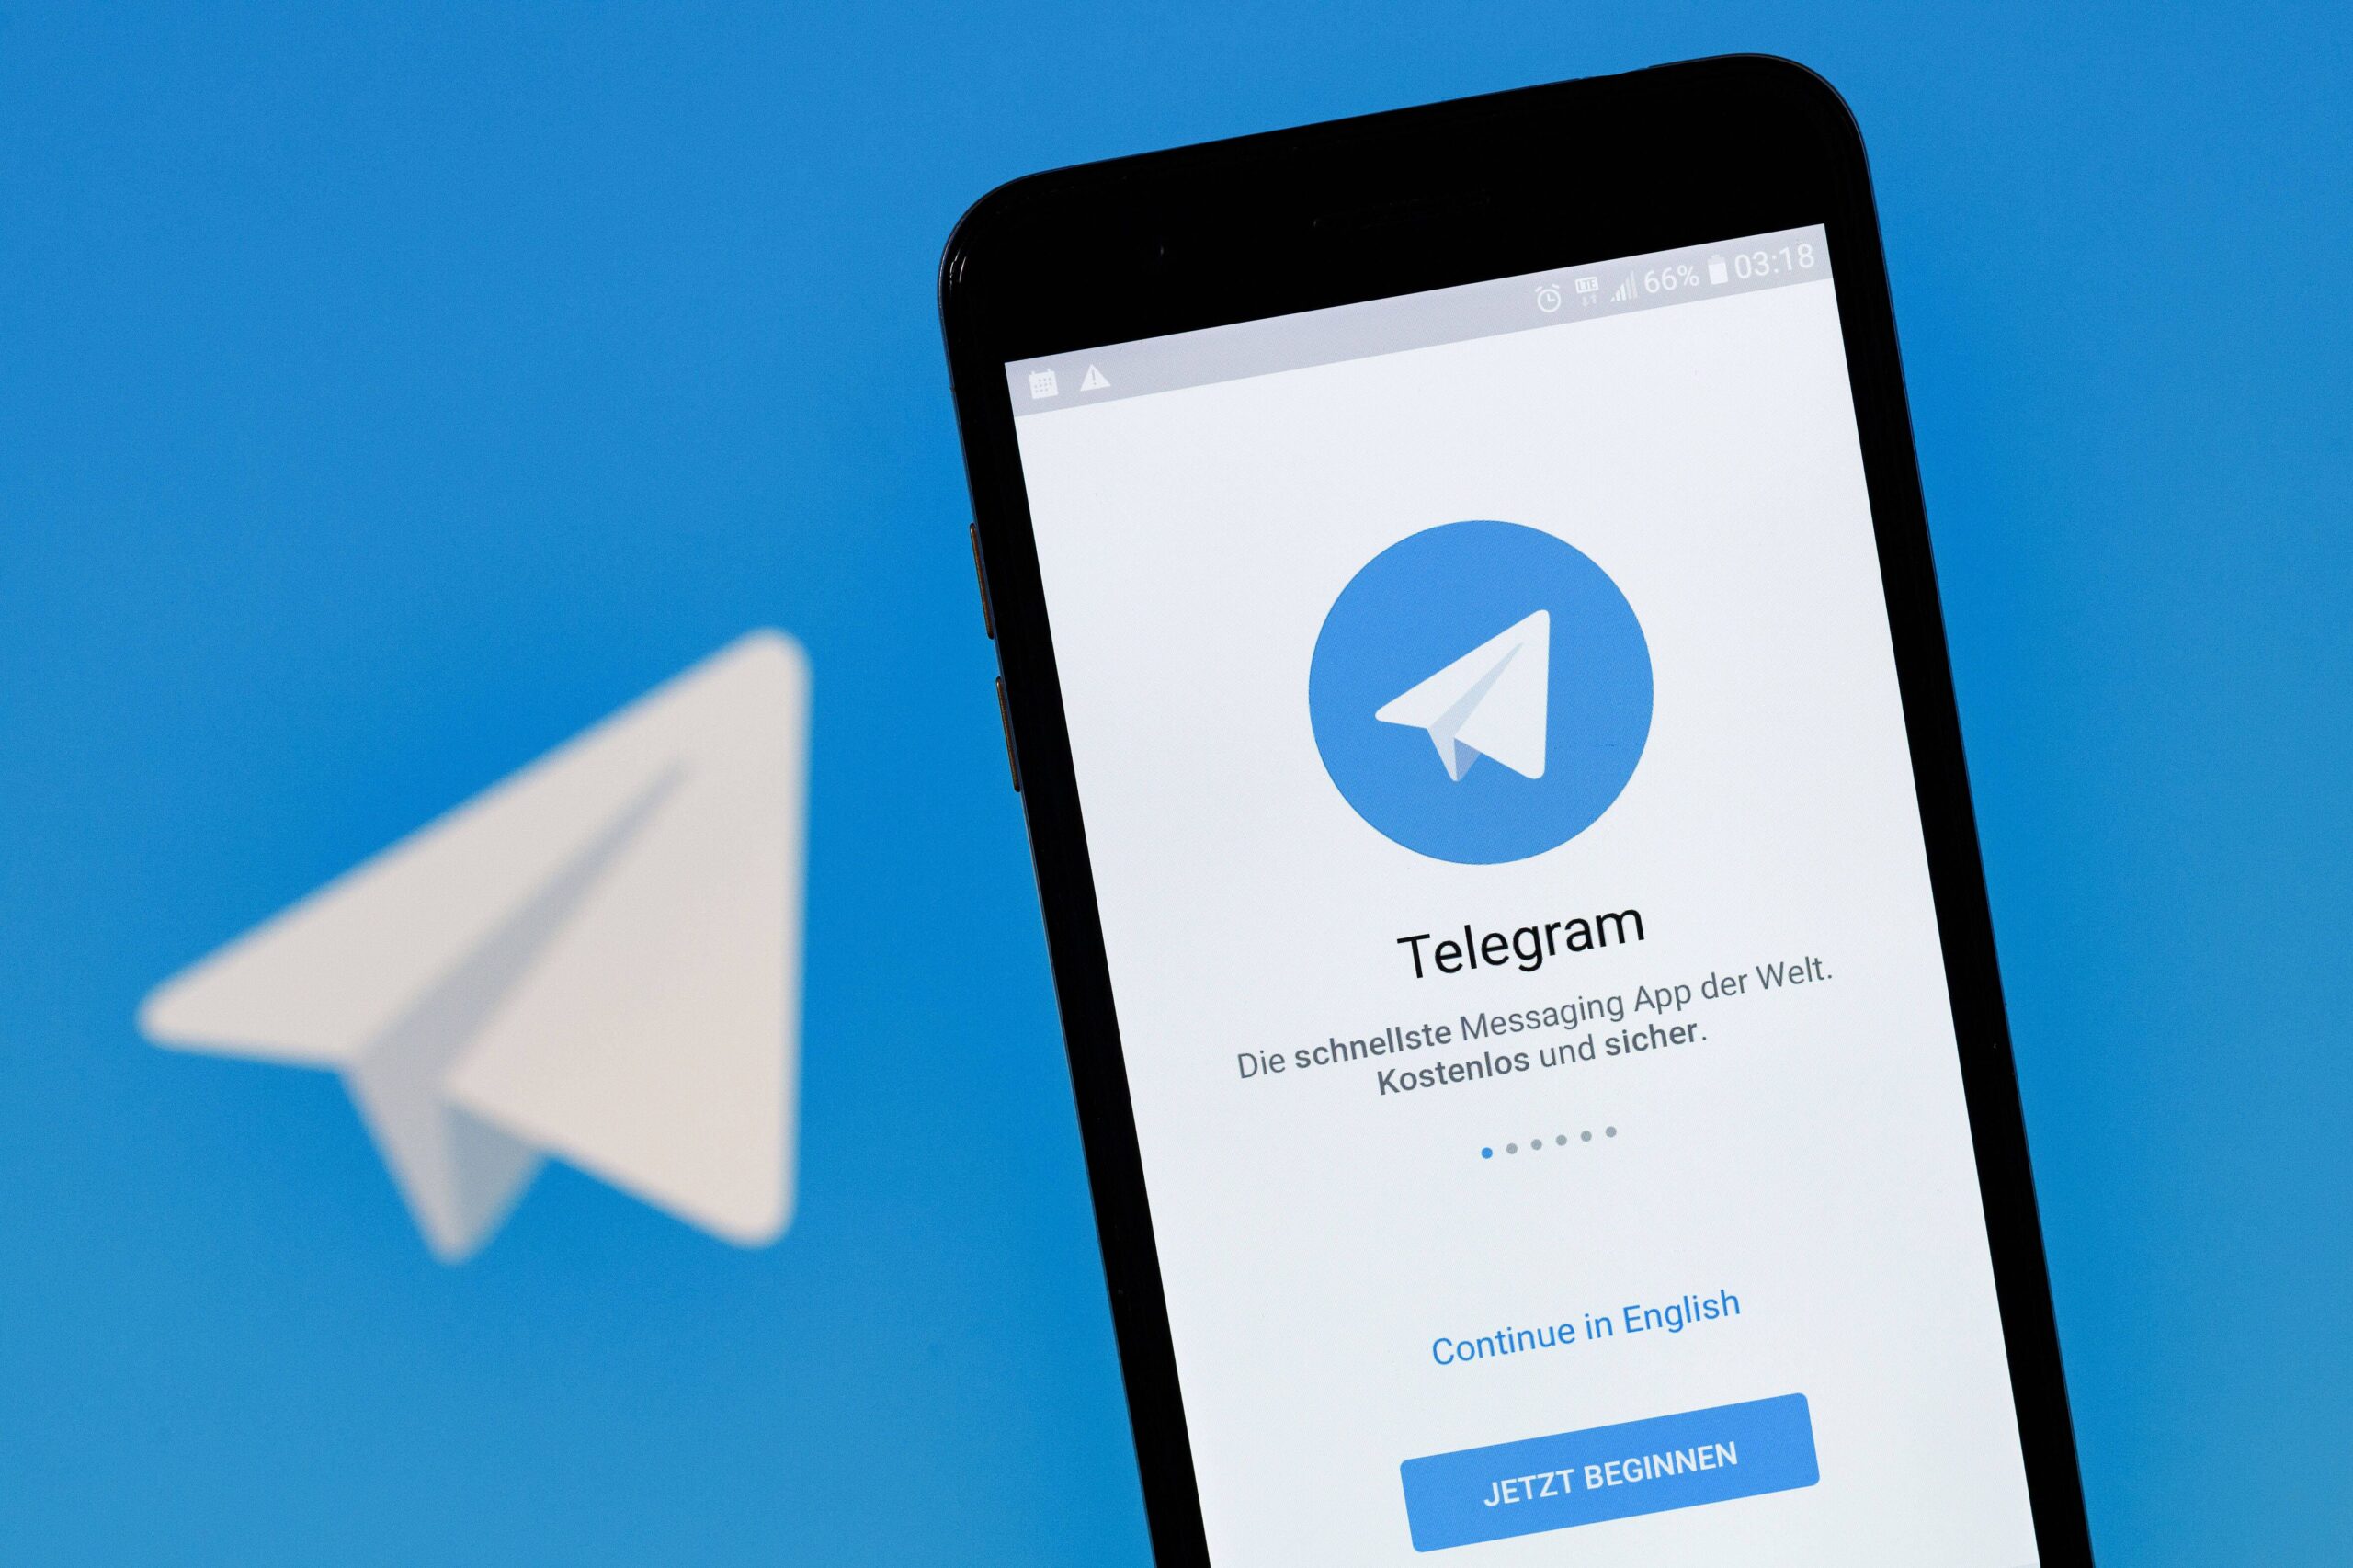 Всё о телеграм: обзор полезных статей и новостей.